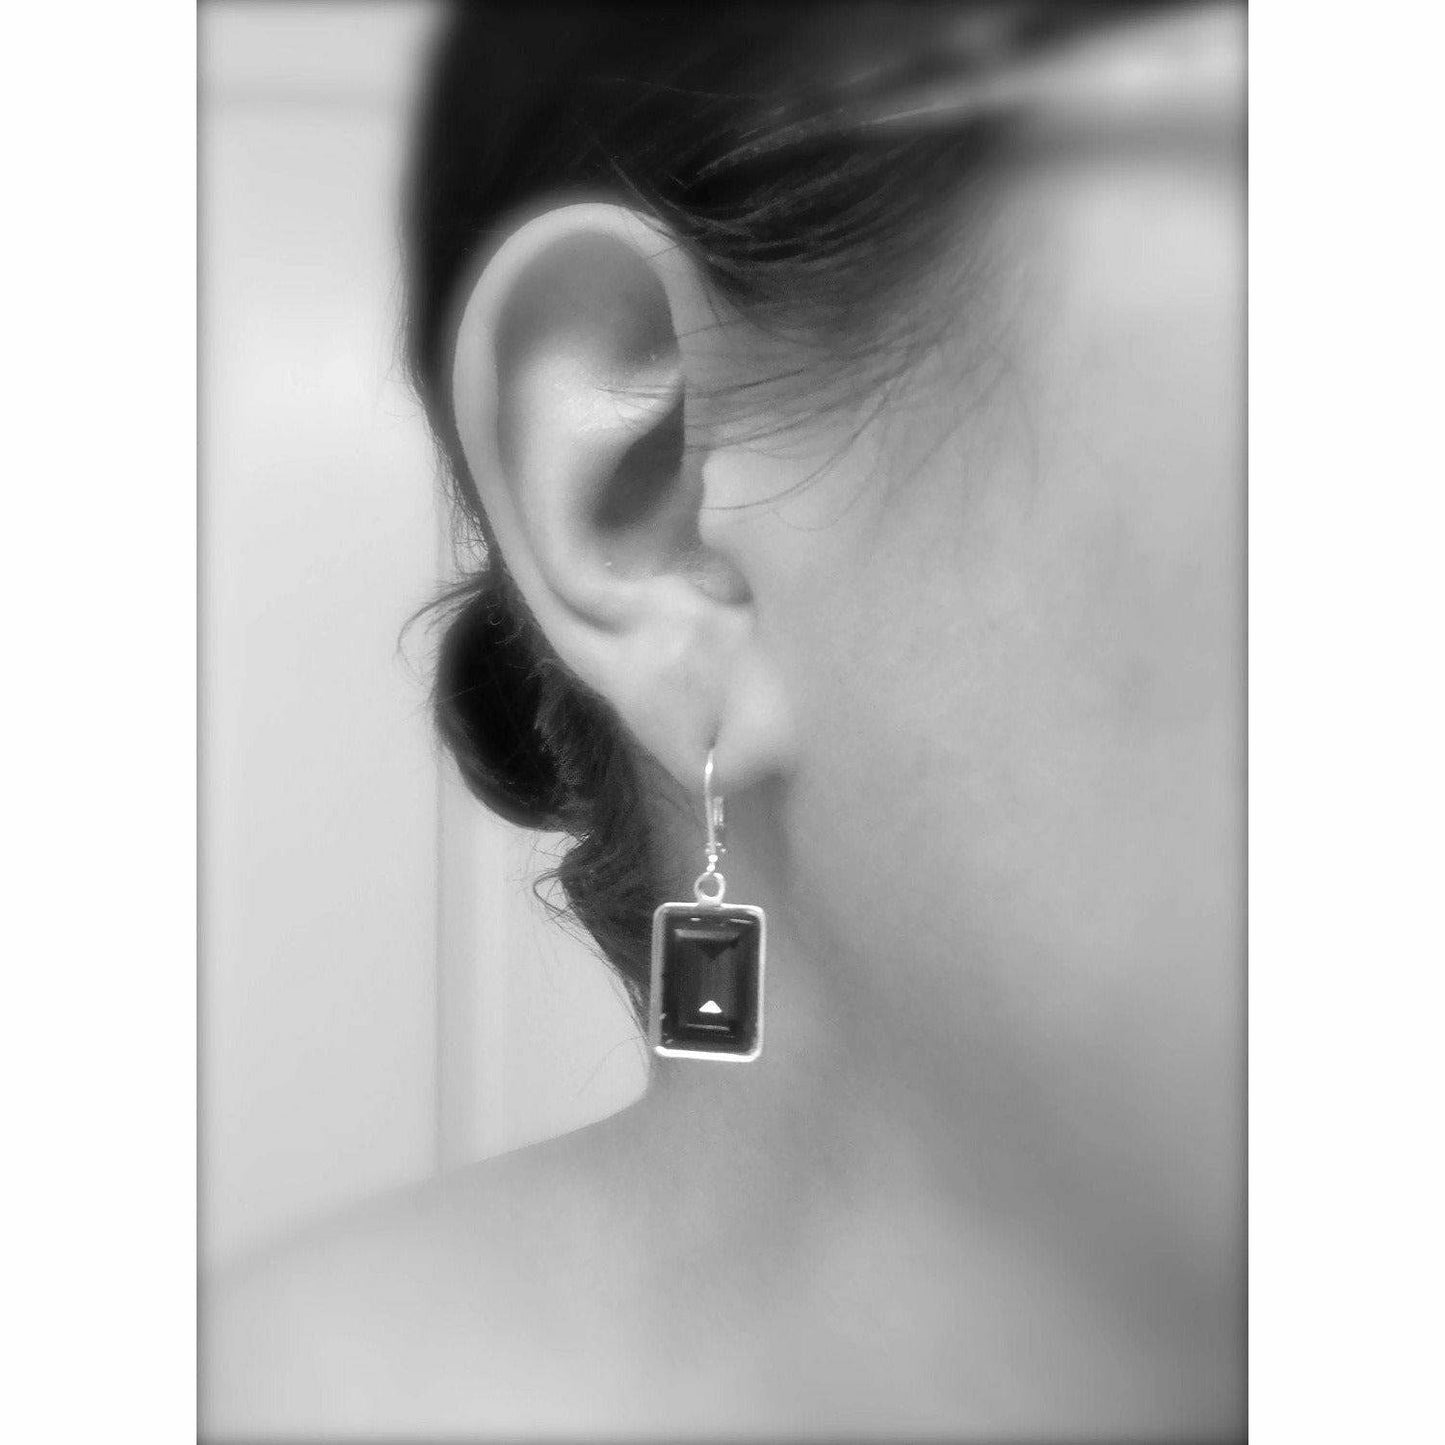 Erinite green crystal Earrings